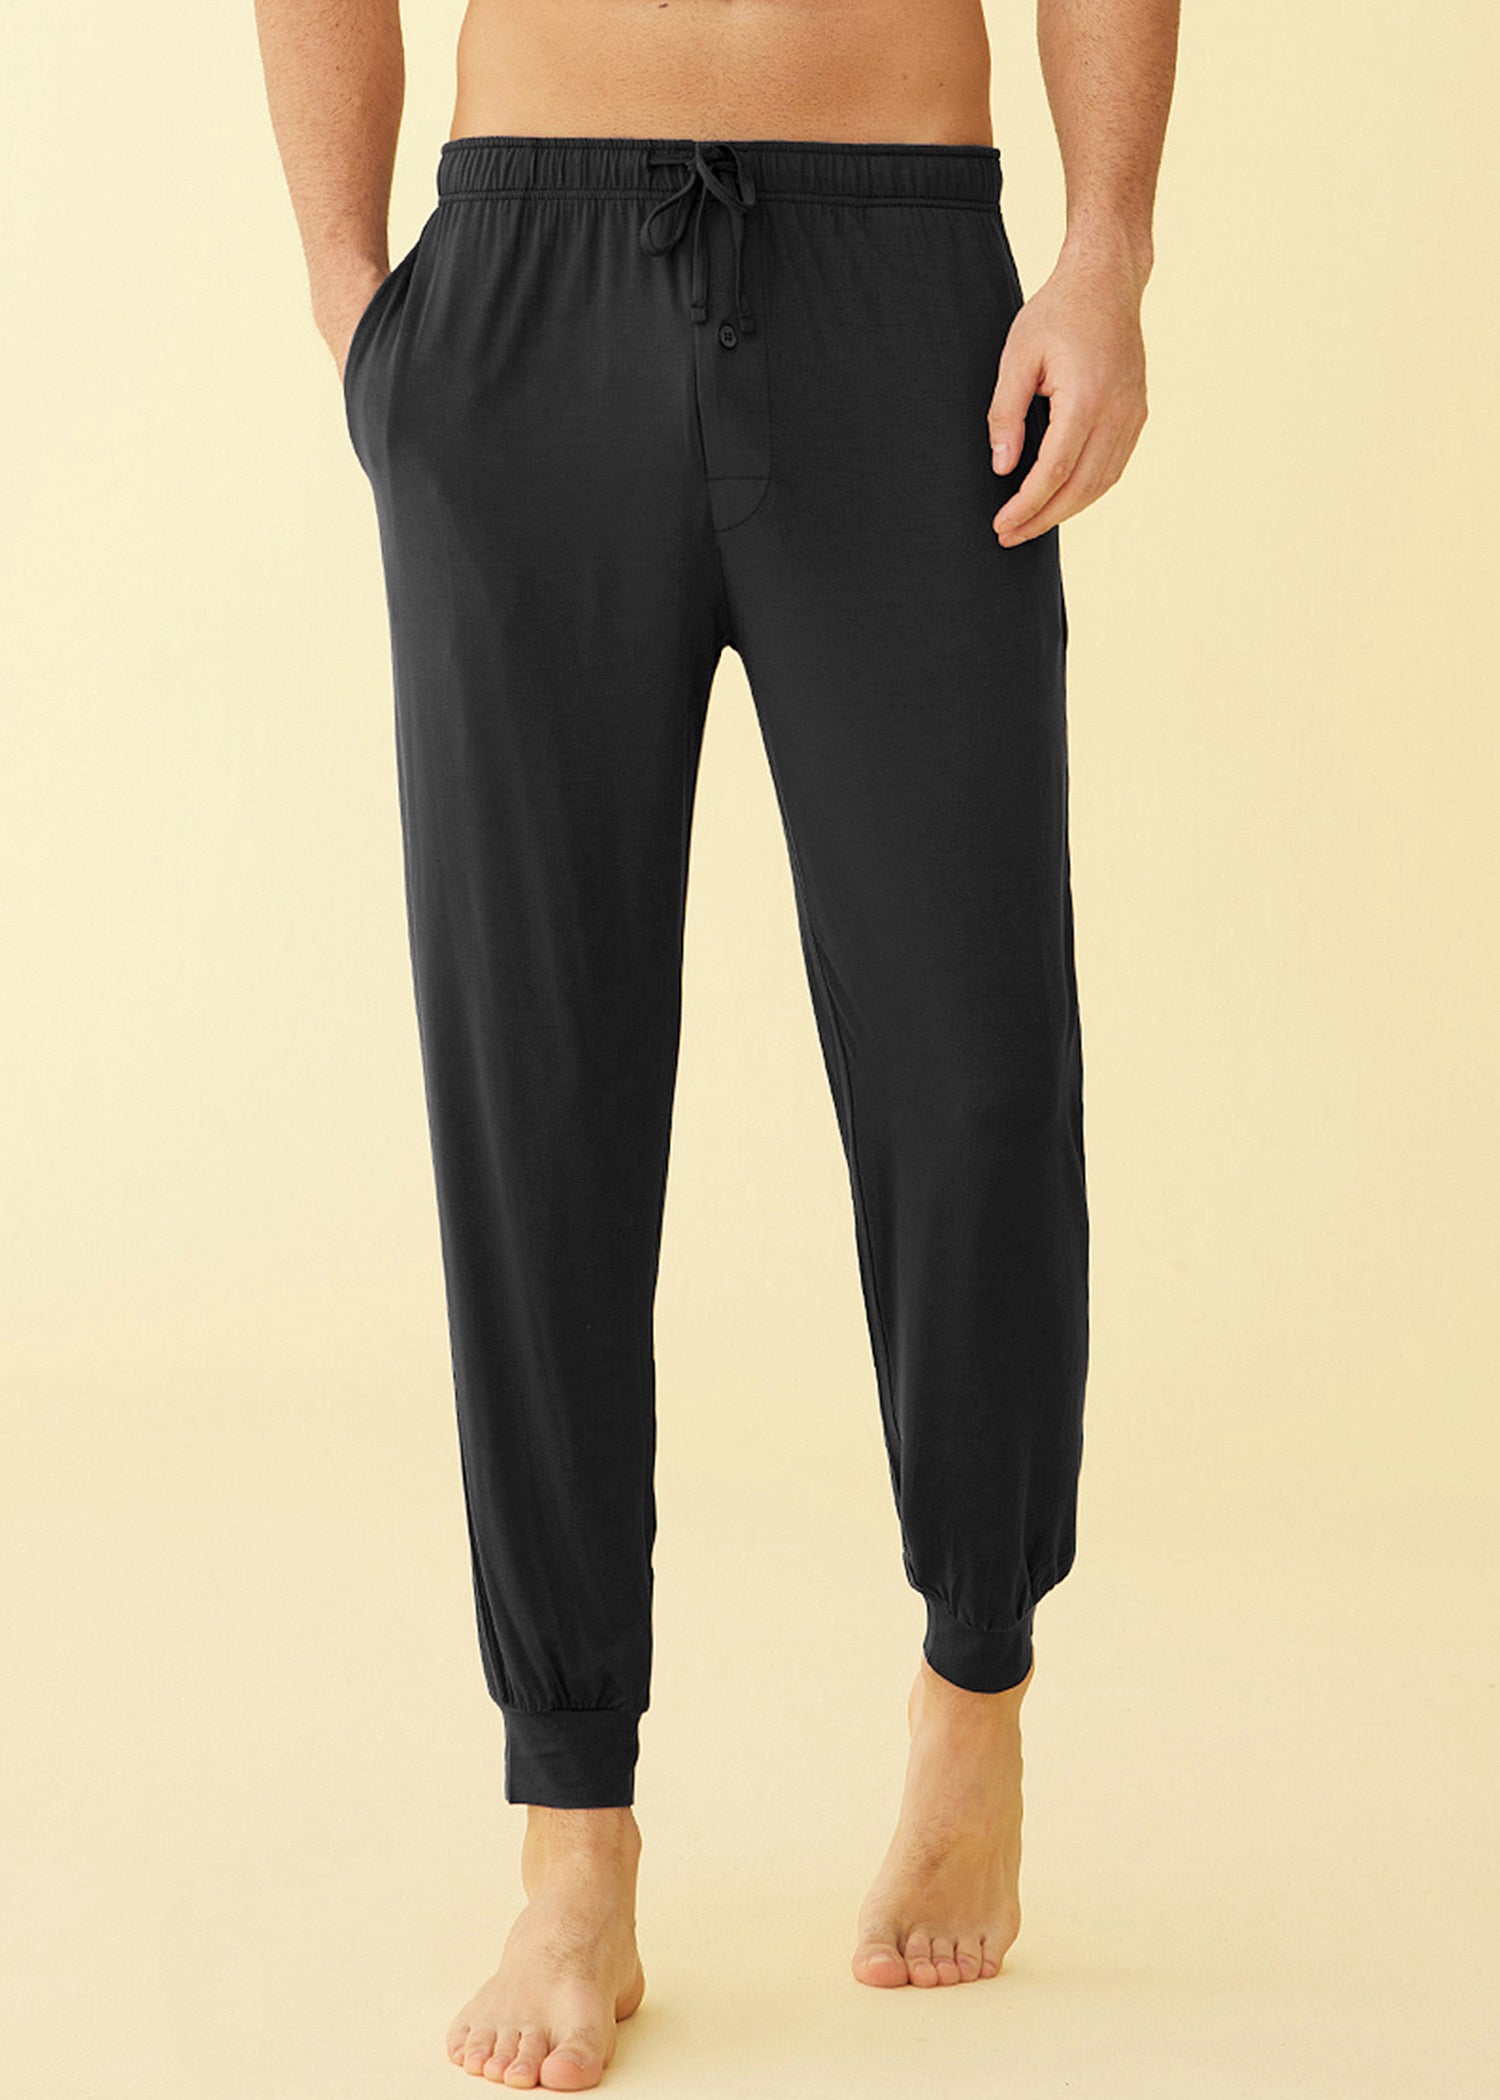 Latuza Women's Cotton Pajama Joggers Knit Lounge Pants, Black